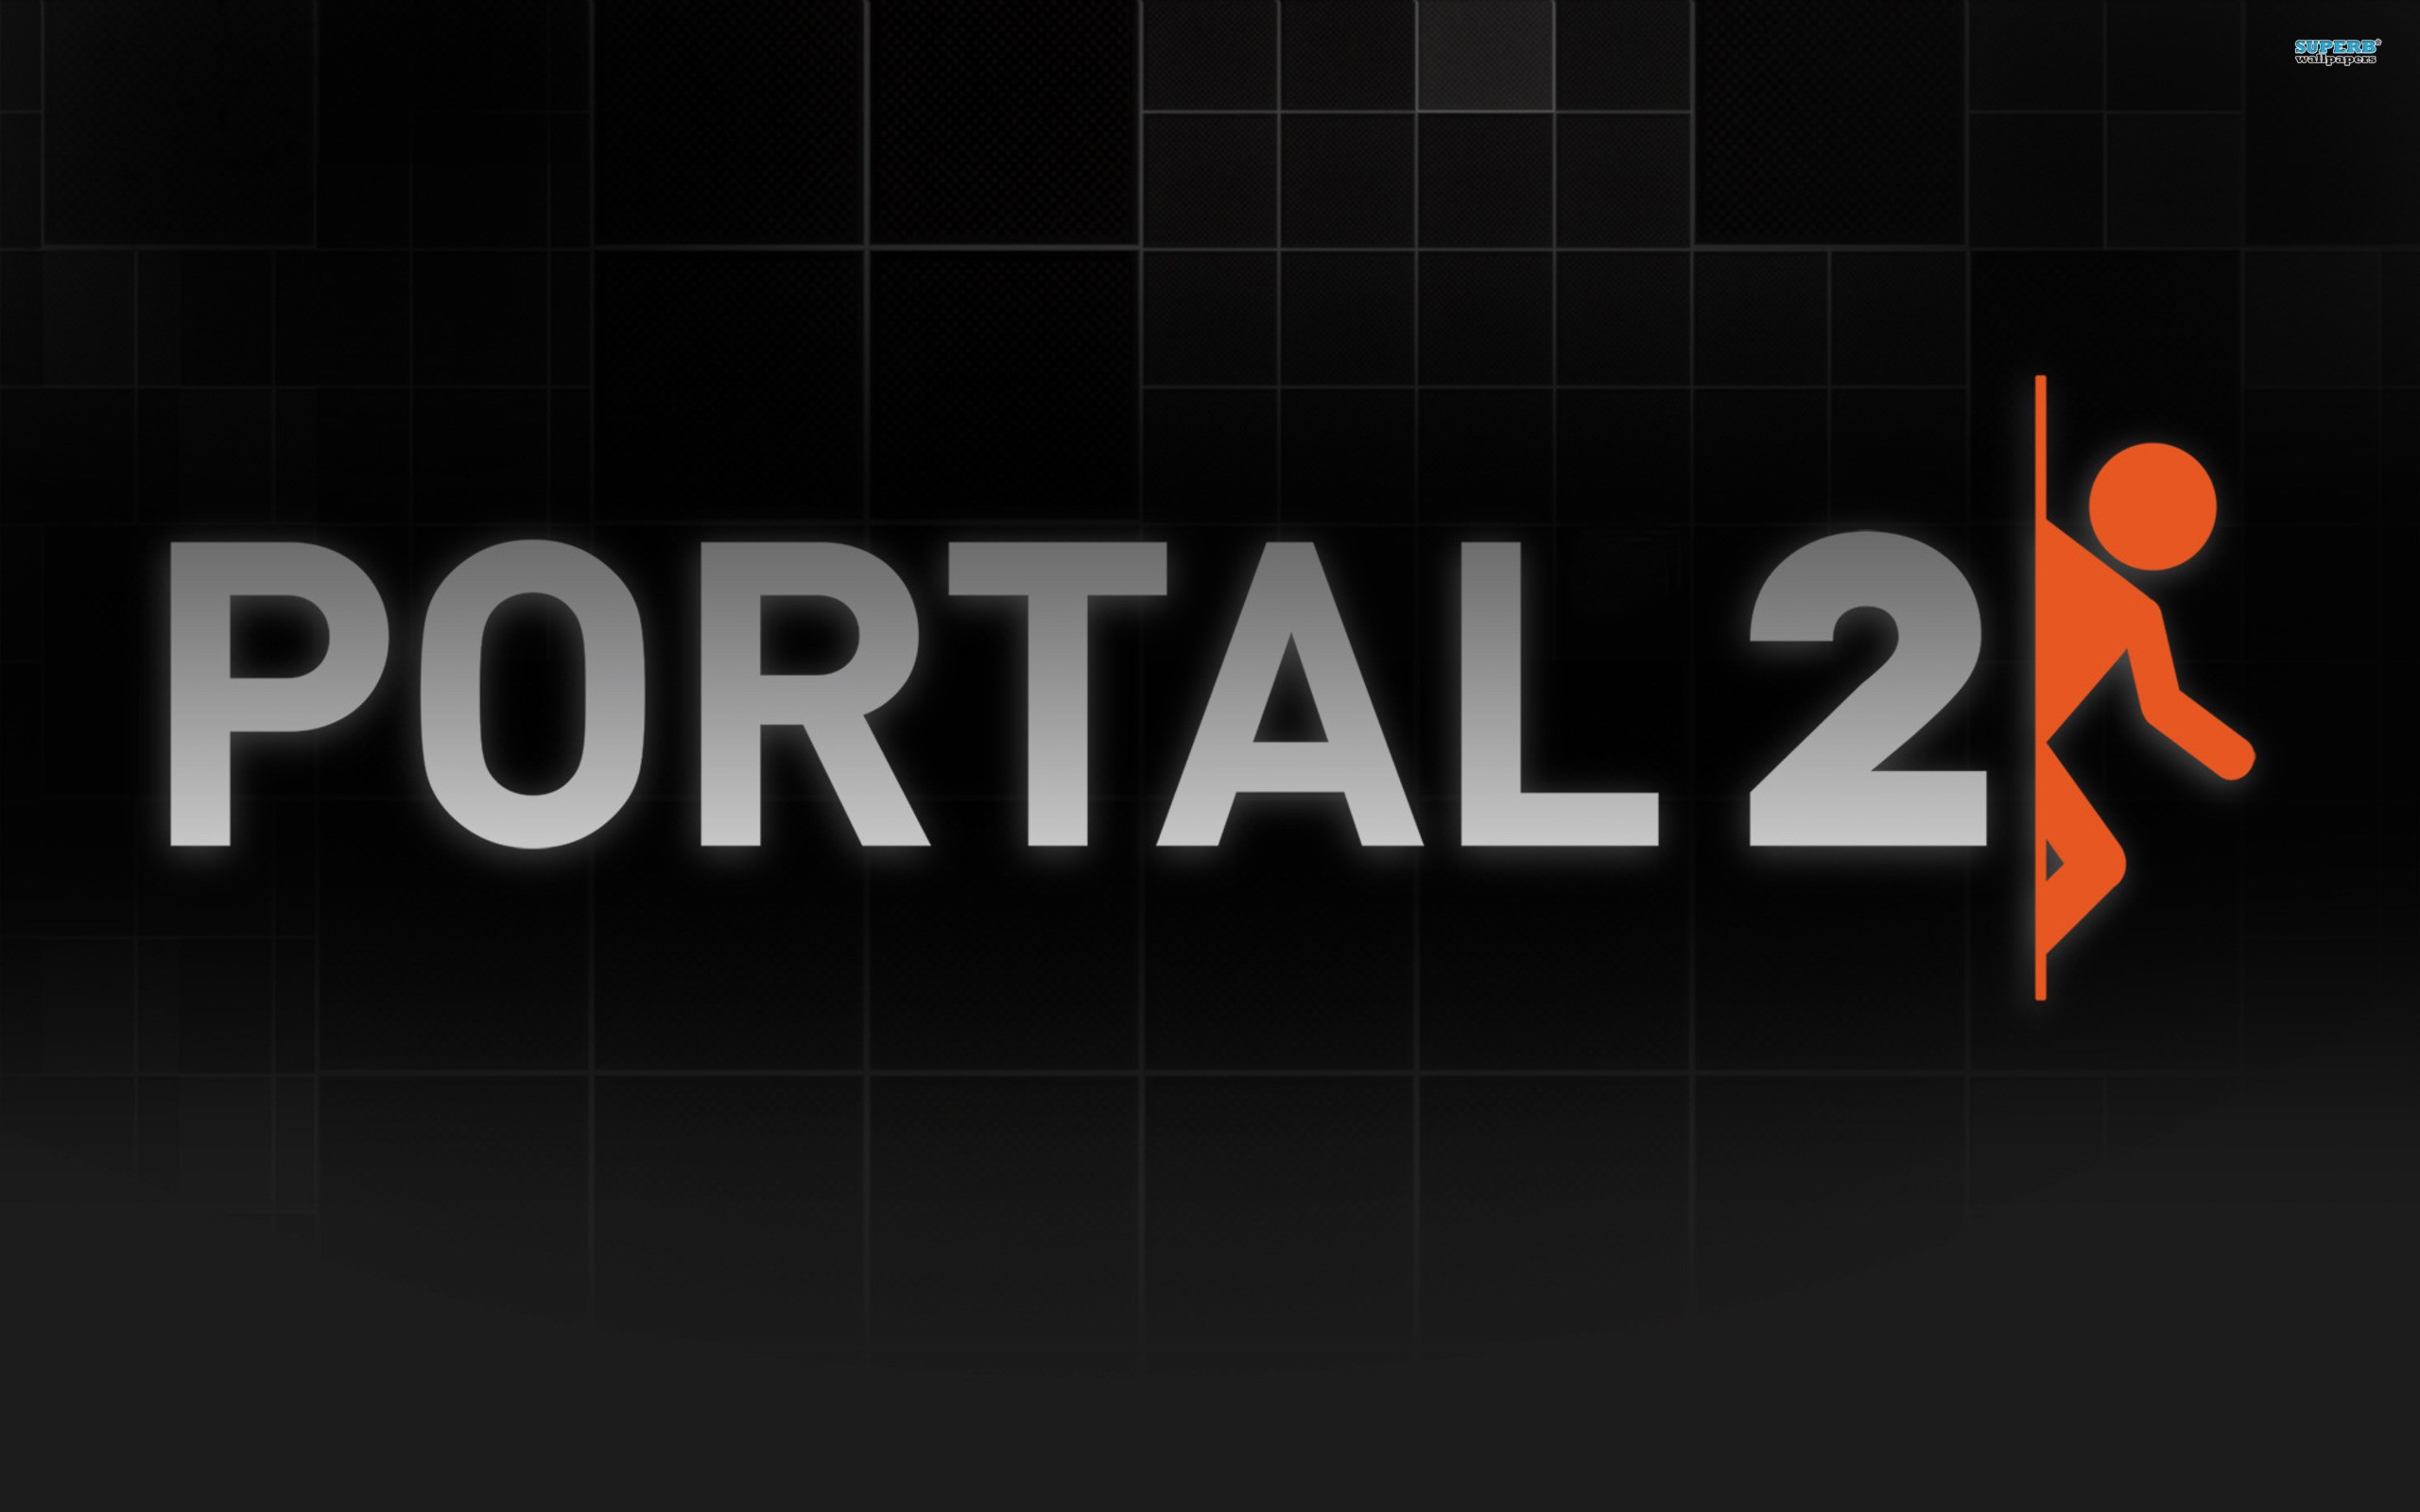 Portal 2 Wallpaper